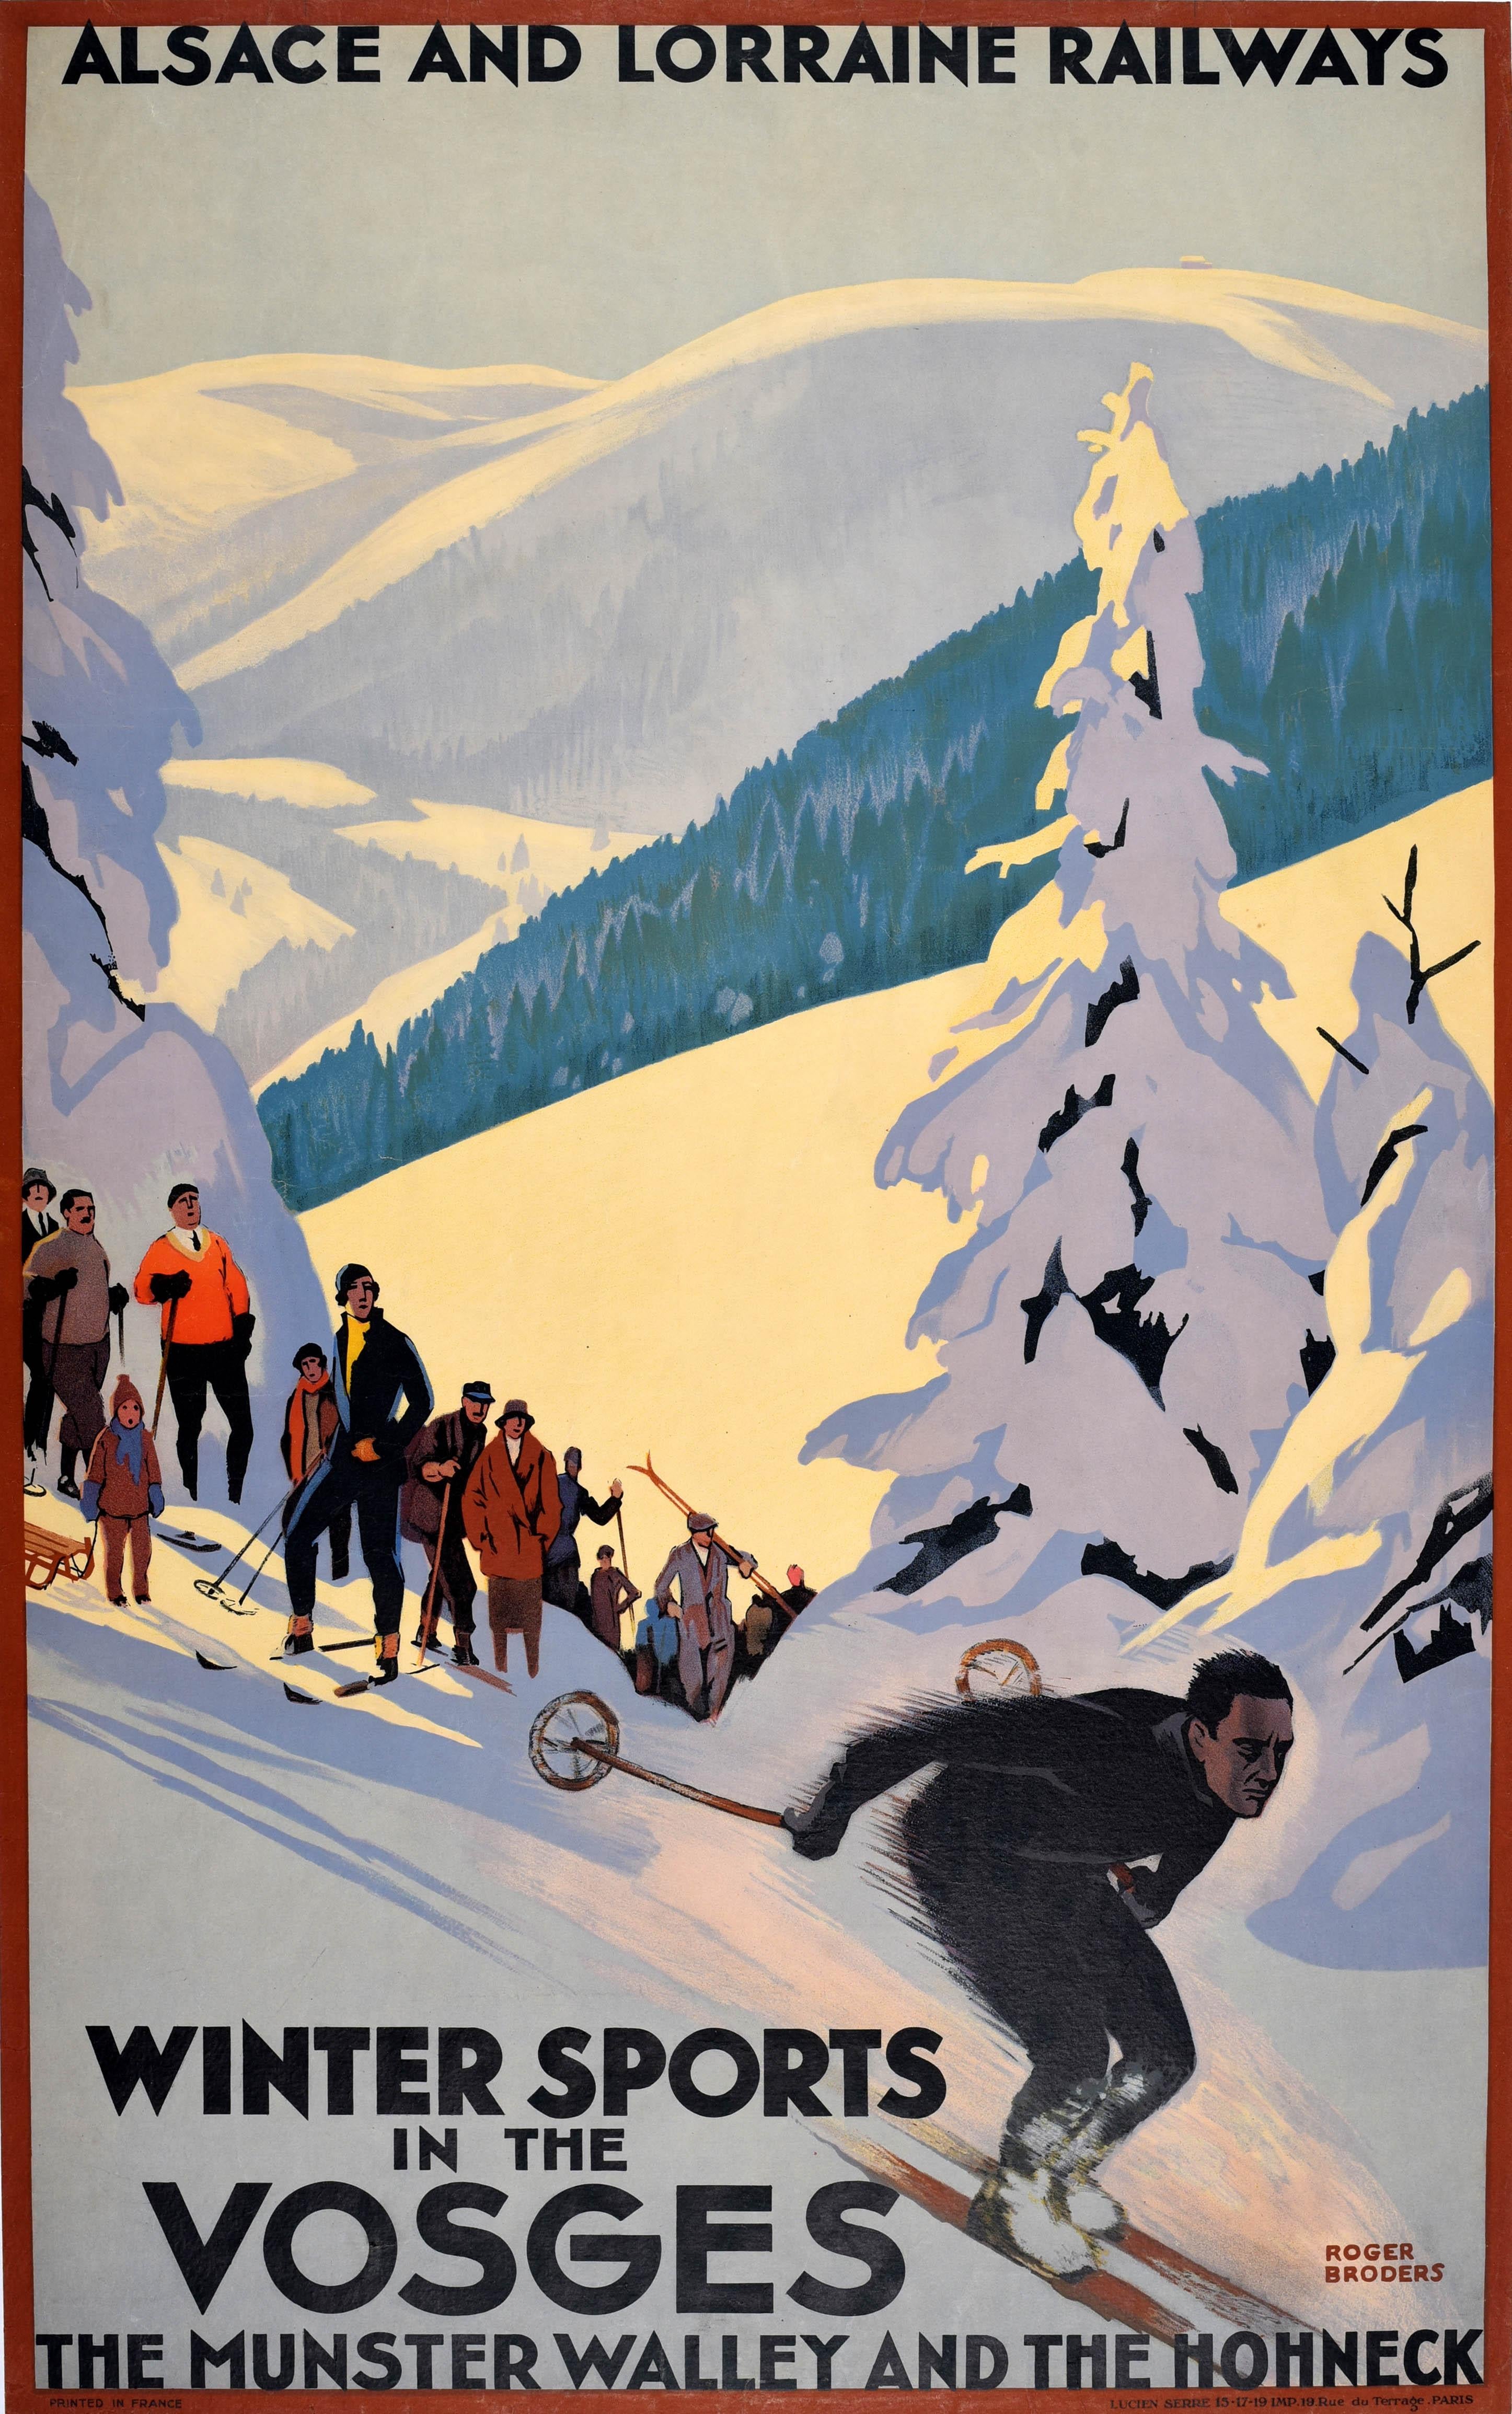 Affiche originale de voyage à ski - Chemins de fer d'Alsace et de Lorraine Sports d'hiver dans les Vosges Le Munster Walley et Le Hohneck - comportant un superbe design Art of Vintage du célèbre artiste français Roger Broders (1883-1953)